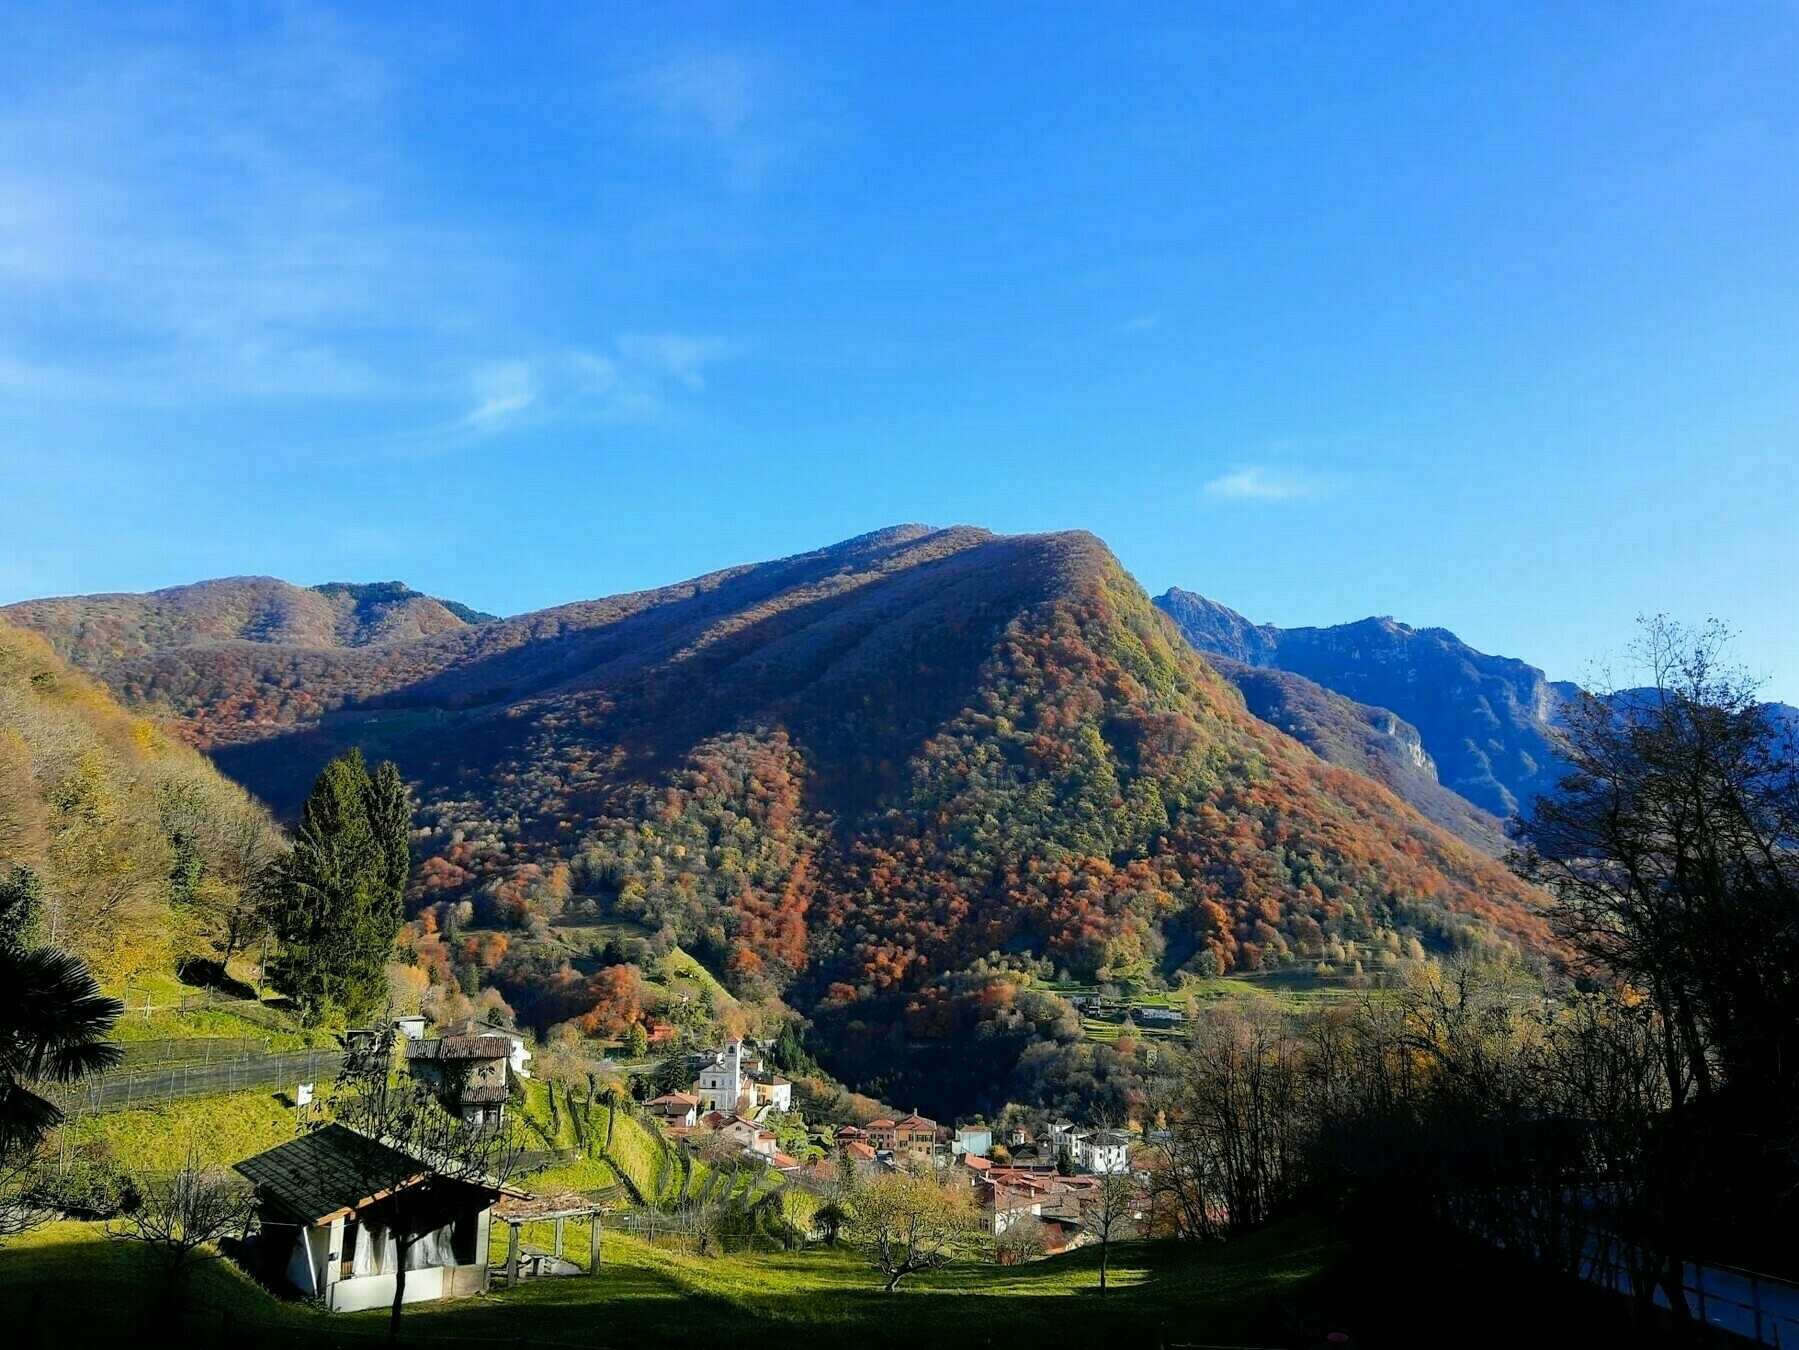 Immagine che mostra il centro abitato di Arogno in Val Mara (Ticino) dall'alto.